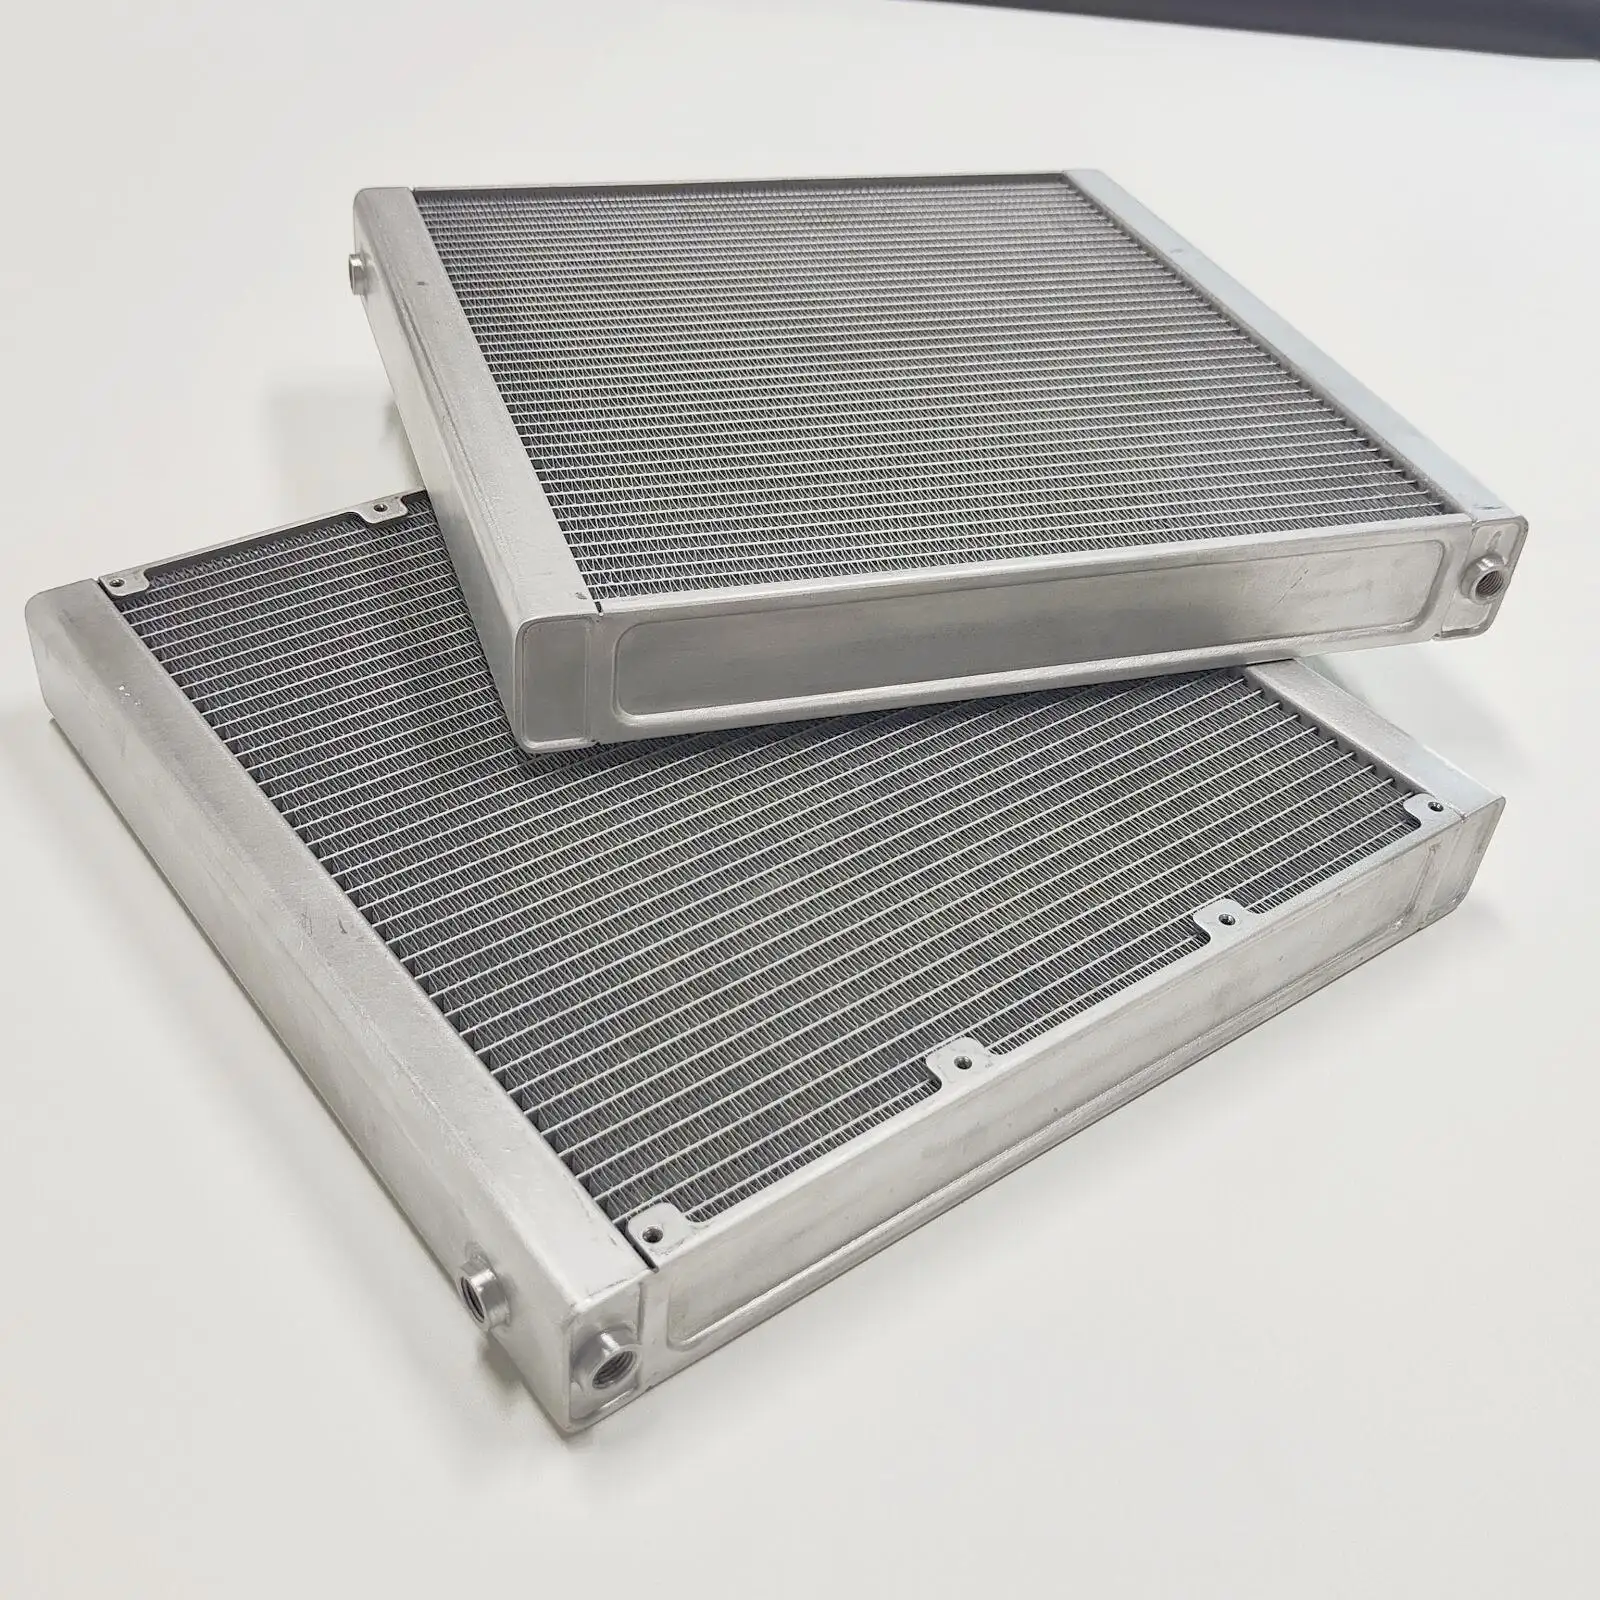 Yeni bilgisayar parçaları klima kondansatörü Oem soğutma sistemi Cp025 radyatör modeli parçaları motor soğutma radyatörü